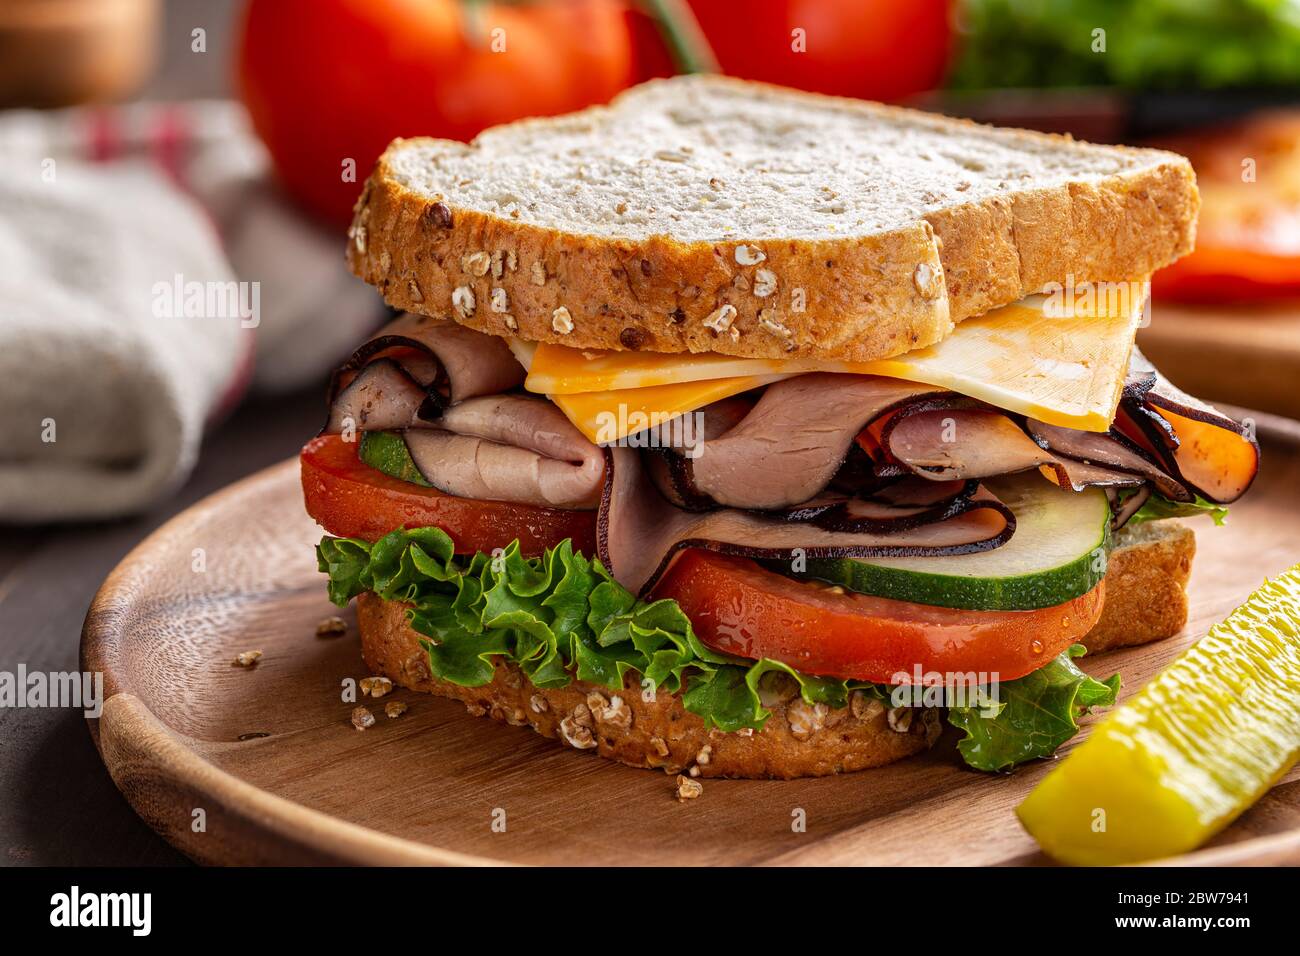 Nahaufnahme eines Schinken-Käse-Sandwich mit Salat, Tomaten und Gurken auf Vollkornbrot auf einem Holzteller Stockfoto